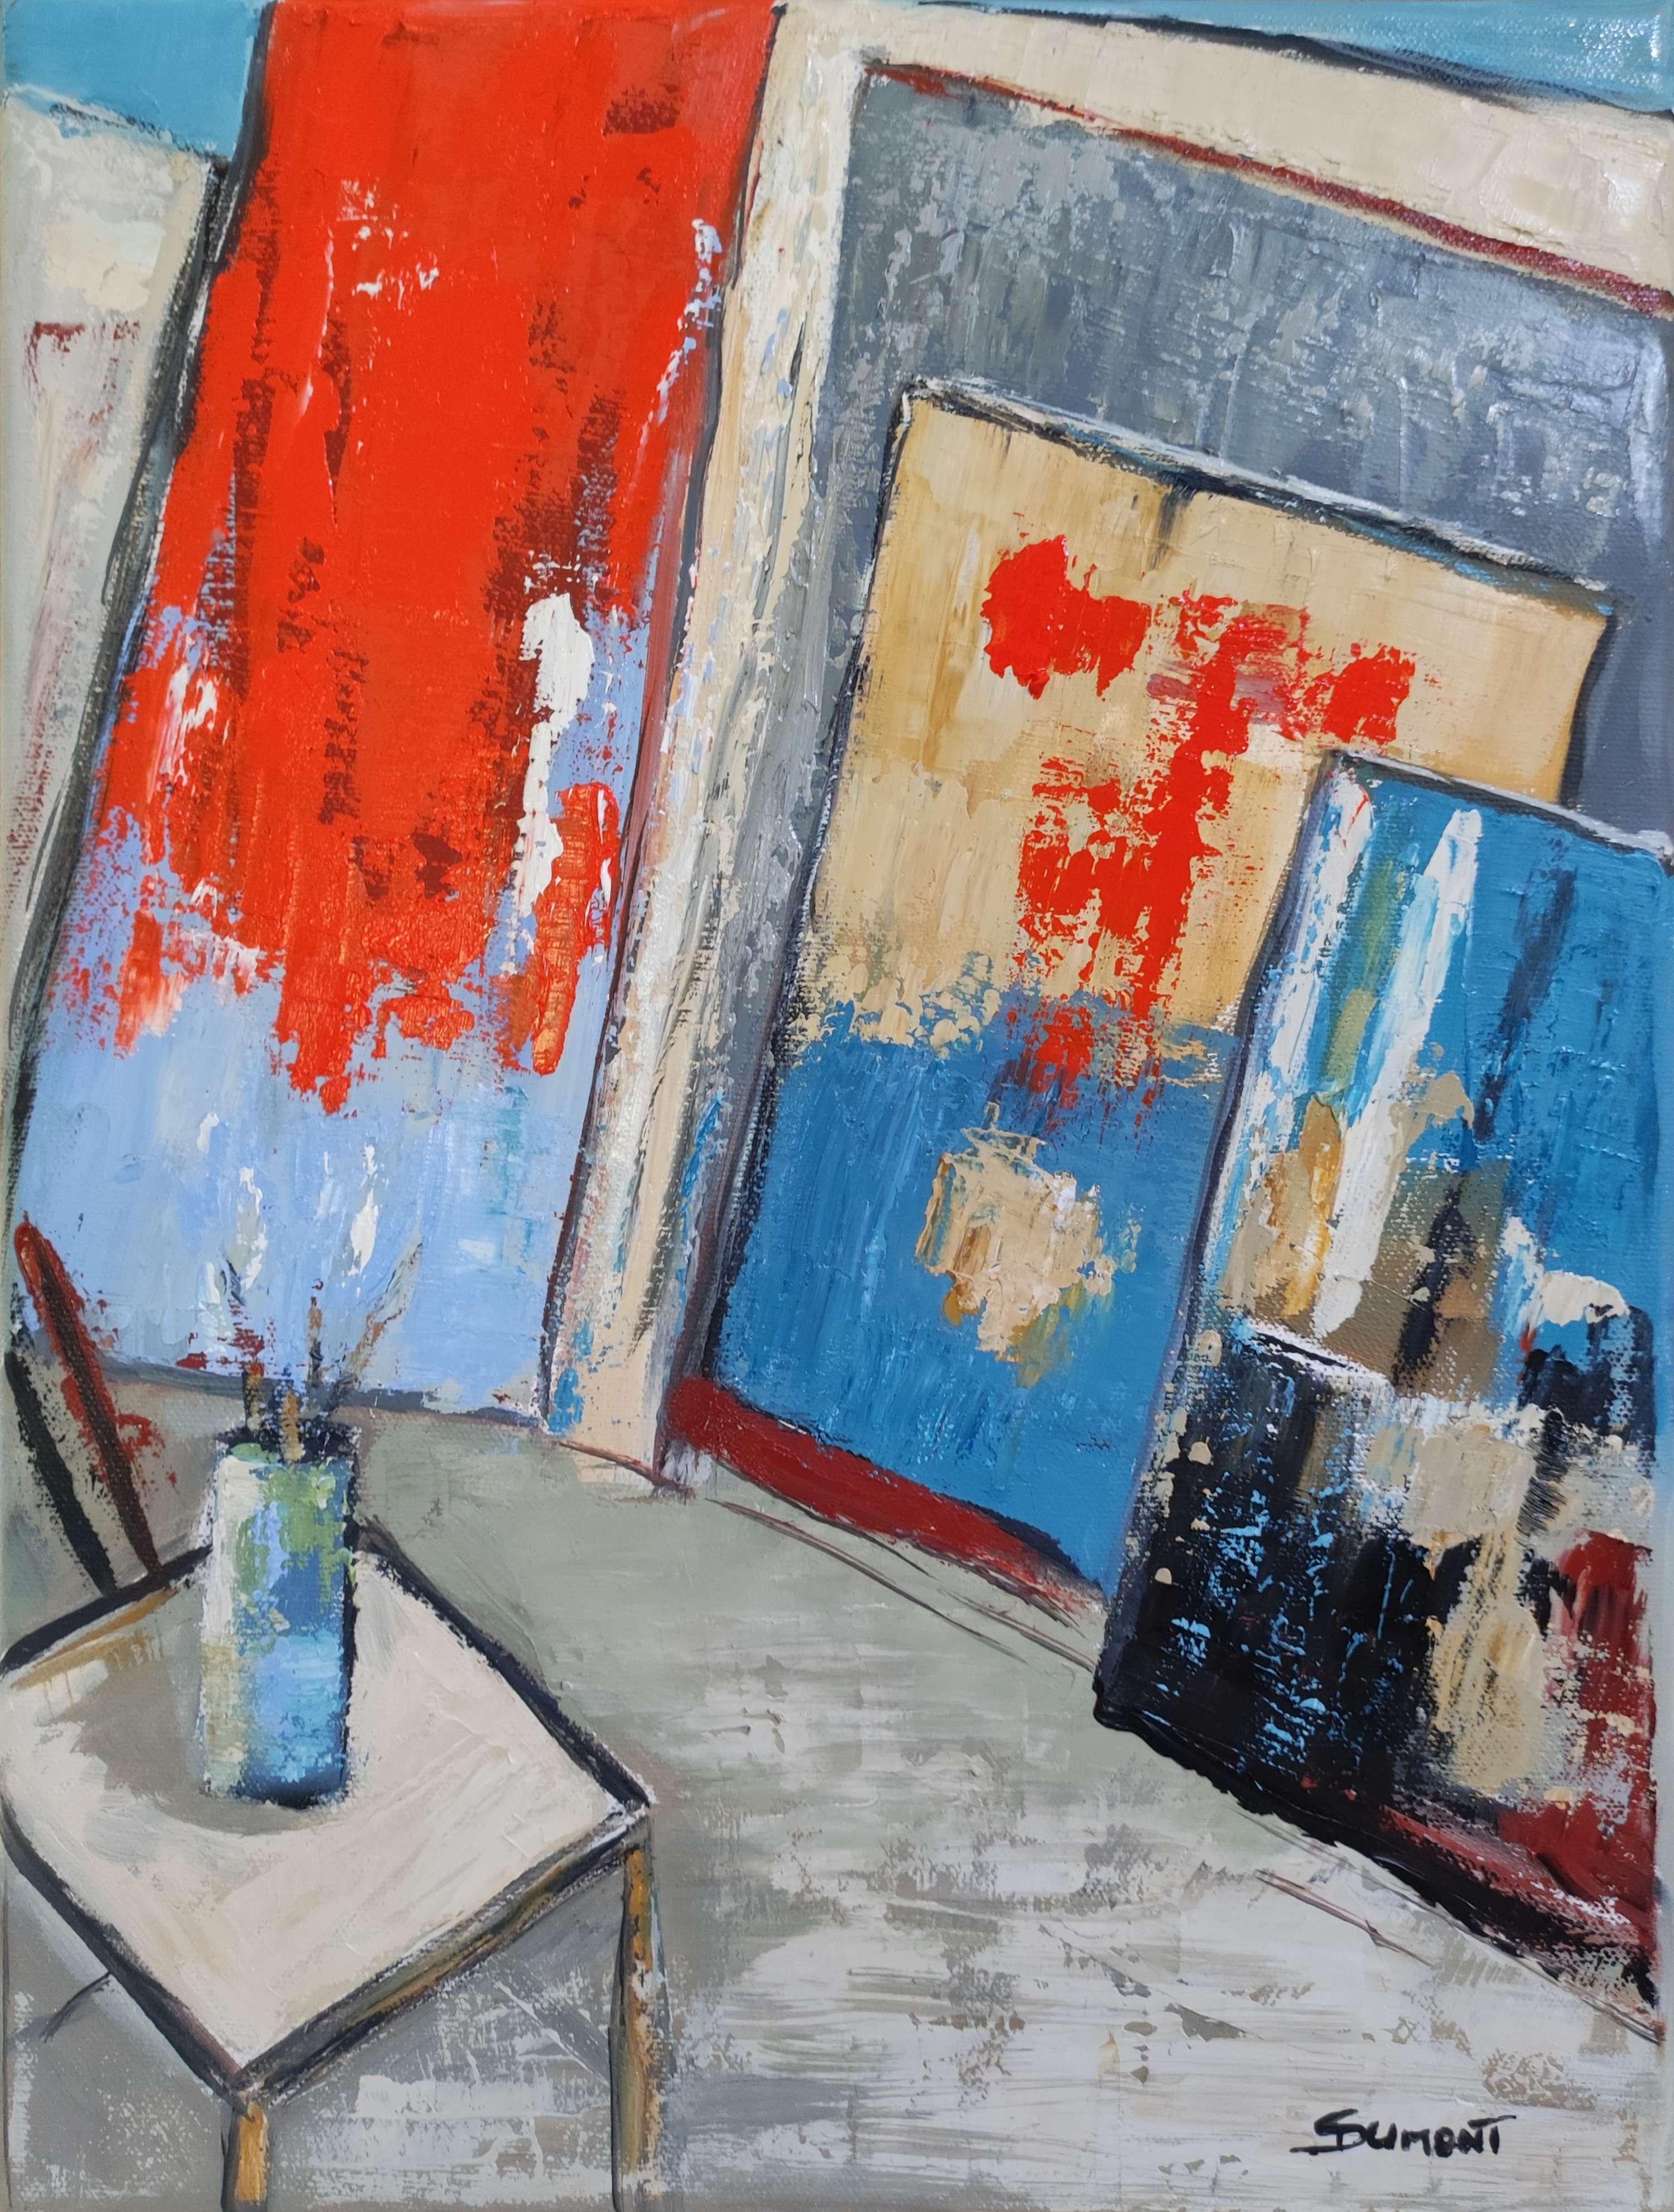 Die Abstraktion von Sophie DUMONT ist kein Konzept, sondern eine Herangehensweise, bei der jede Leinwand um Grafiken herum aufgebaut ist, die durch Farbe ins rechte Licht gerückt werden.

Geometrische Abstraktion eines Ateliers in Blau- und Rottönen